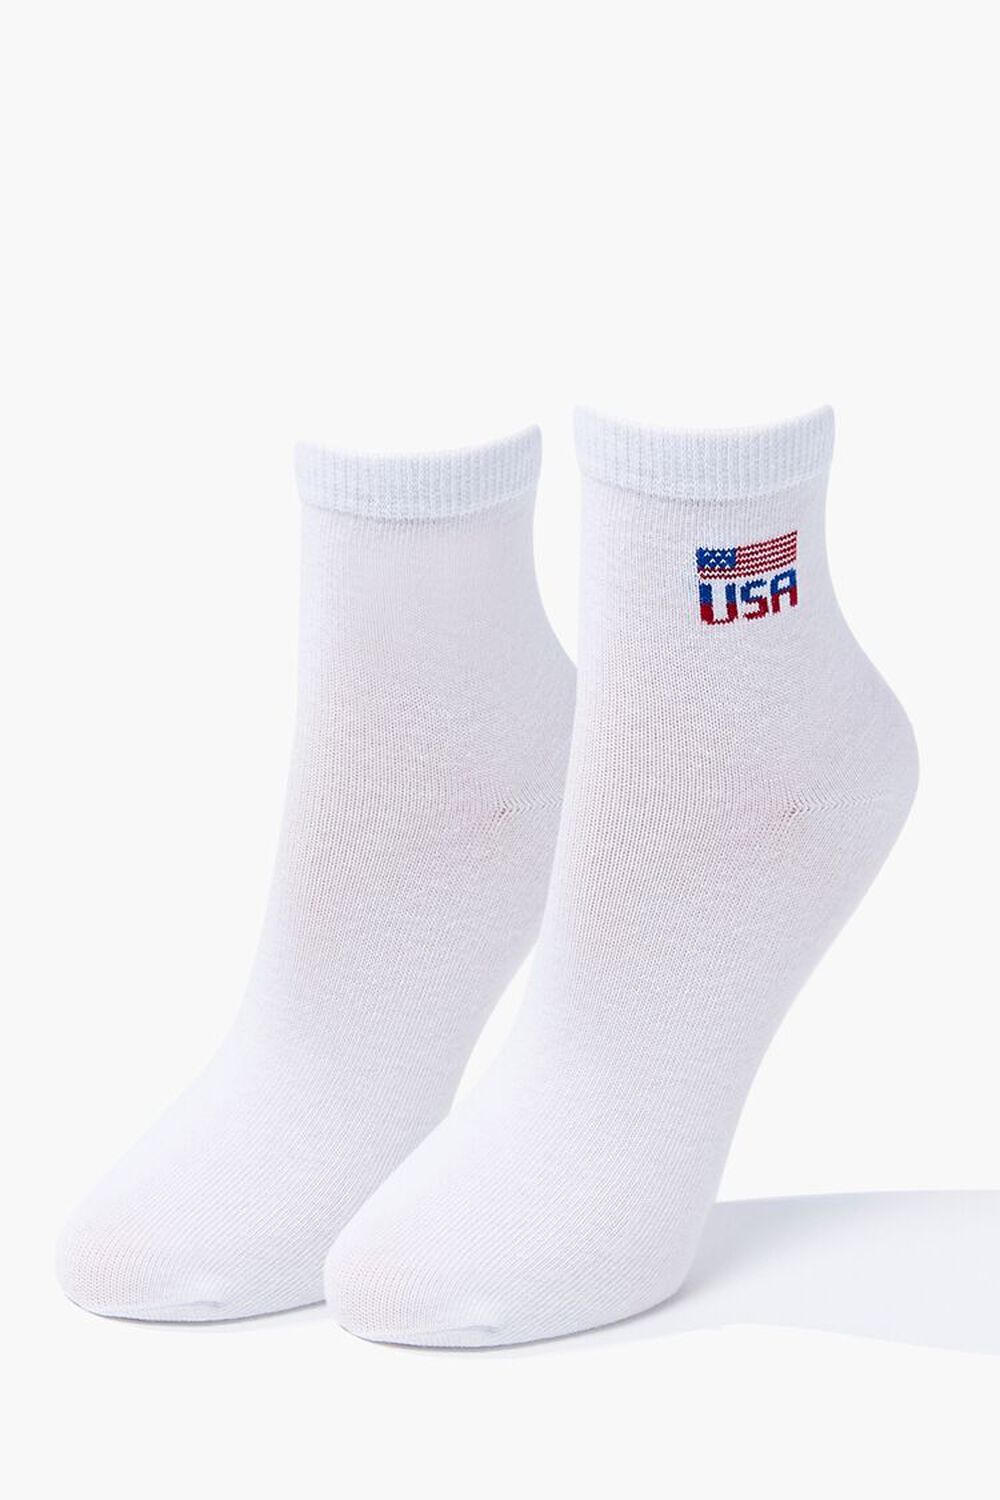 USA Quarter Socks